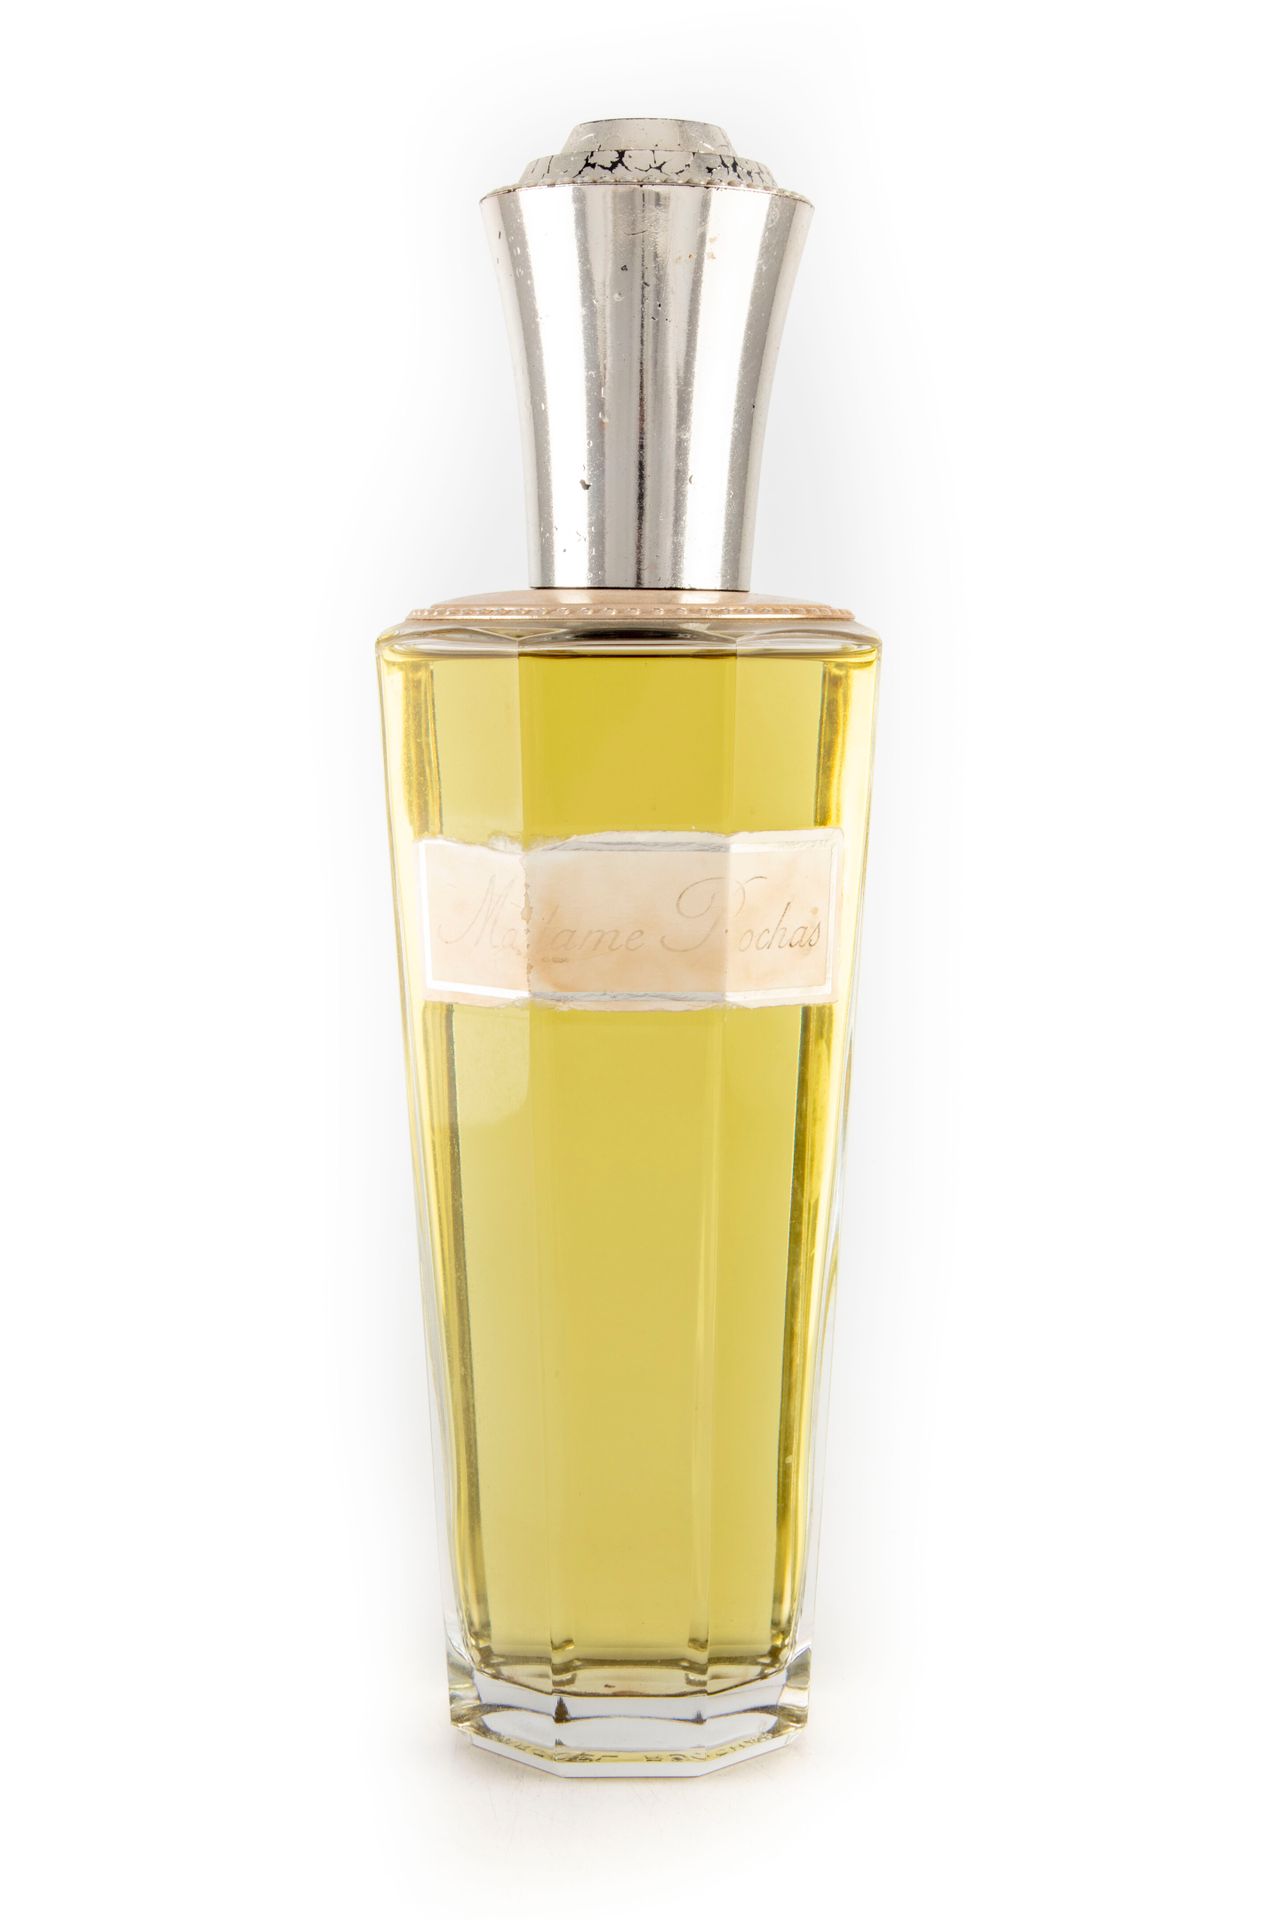 Null ROCHAS

Frasco de perfume de vidrio "Madame Rochas", falso 

H. 27 cm